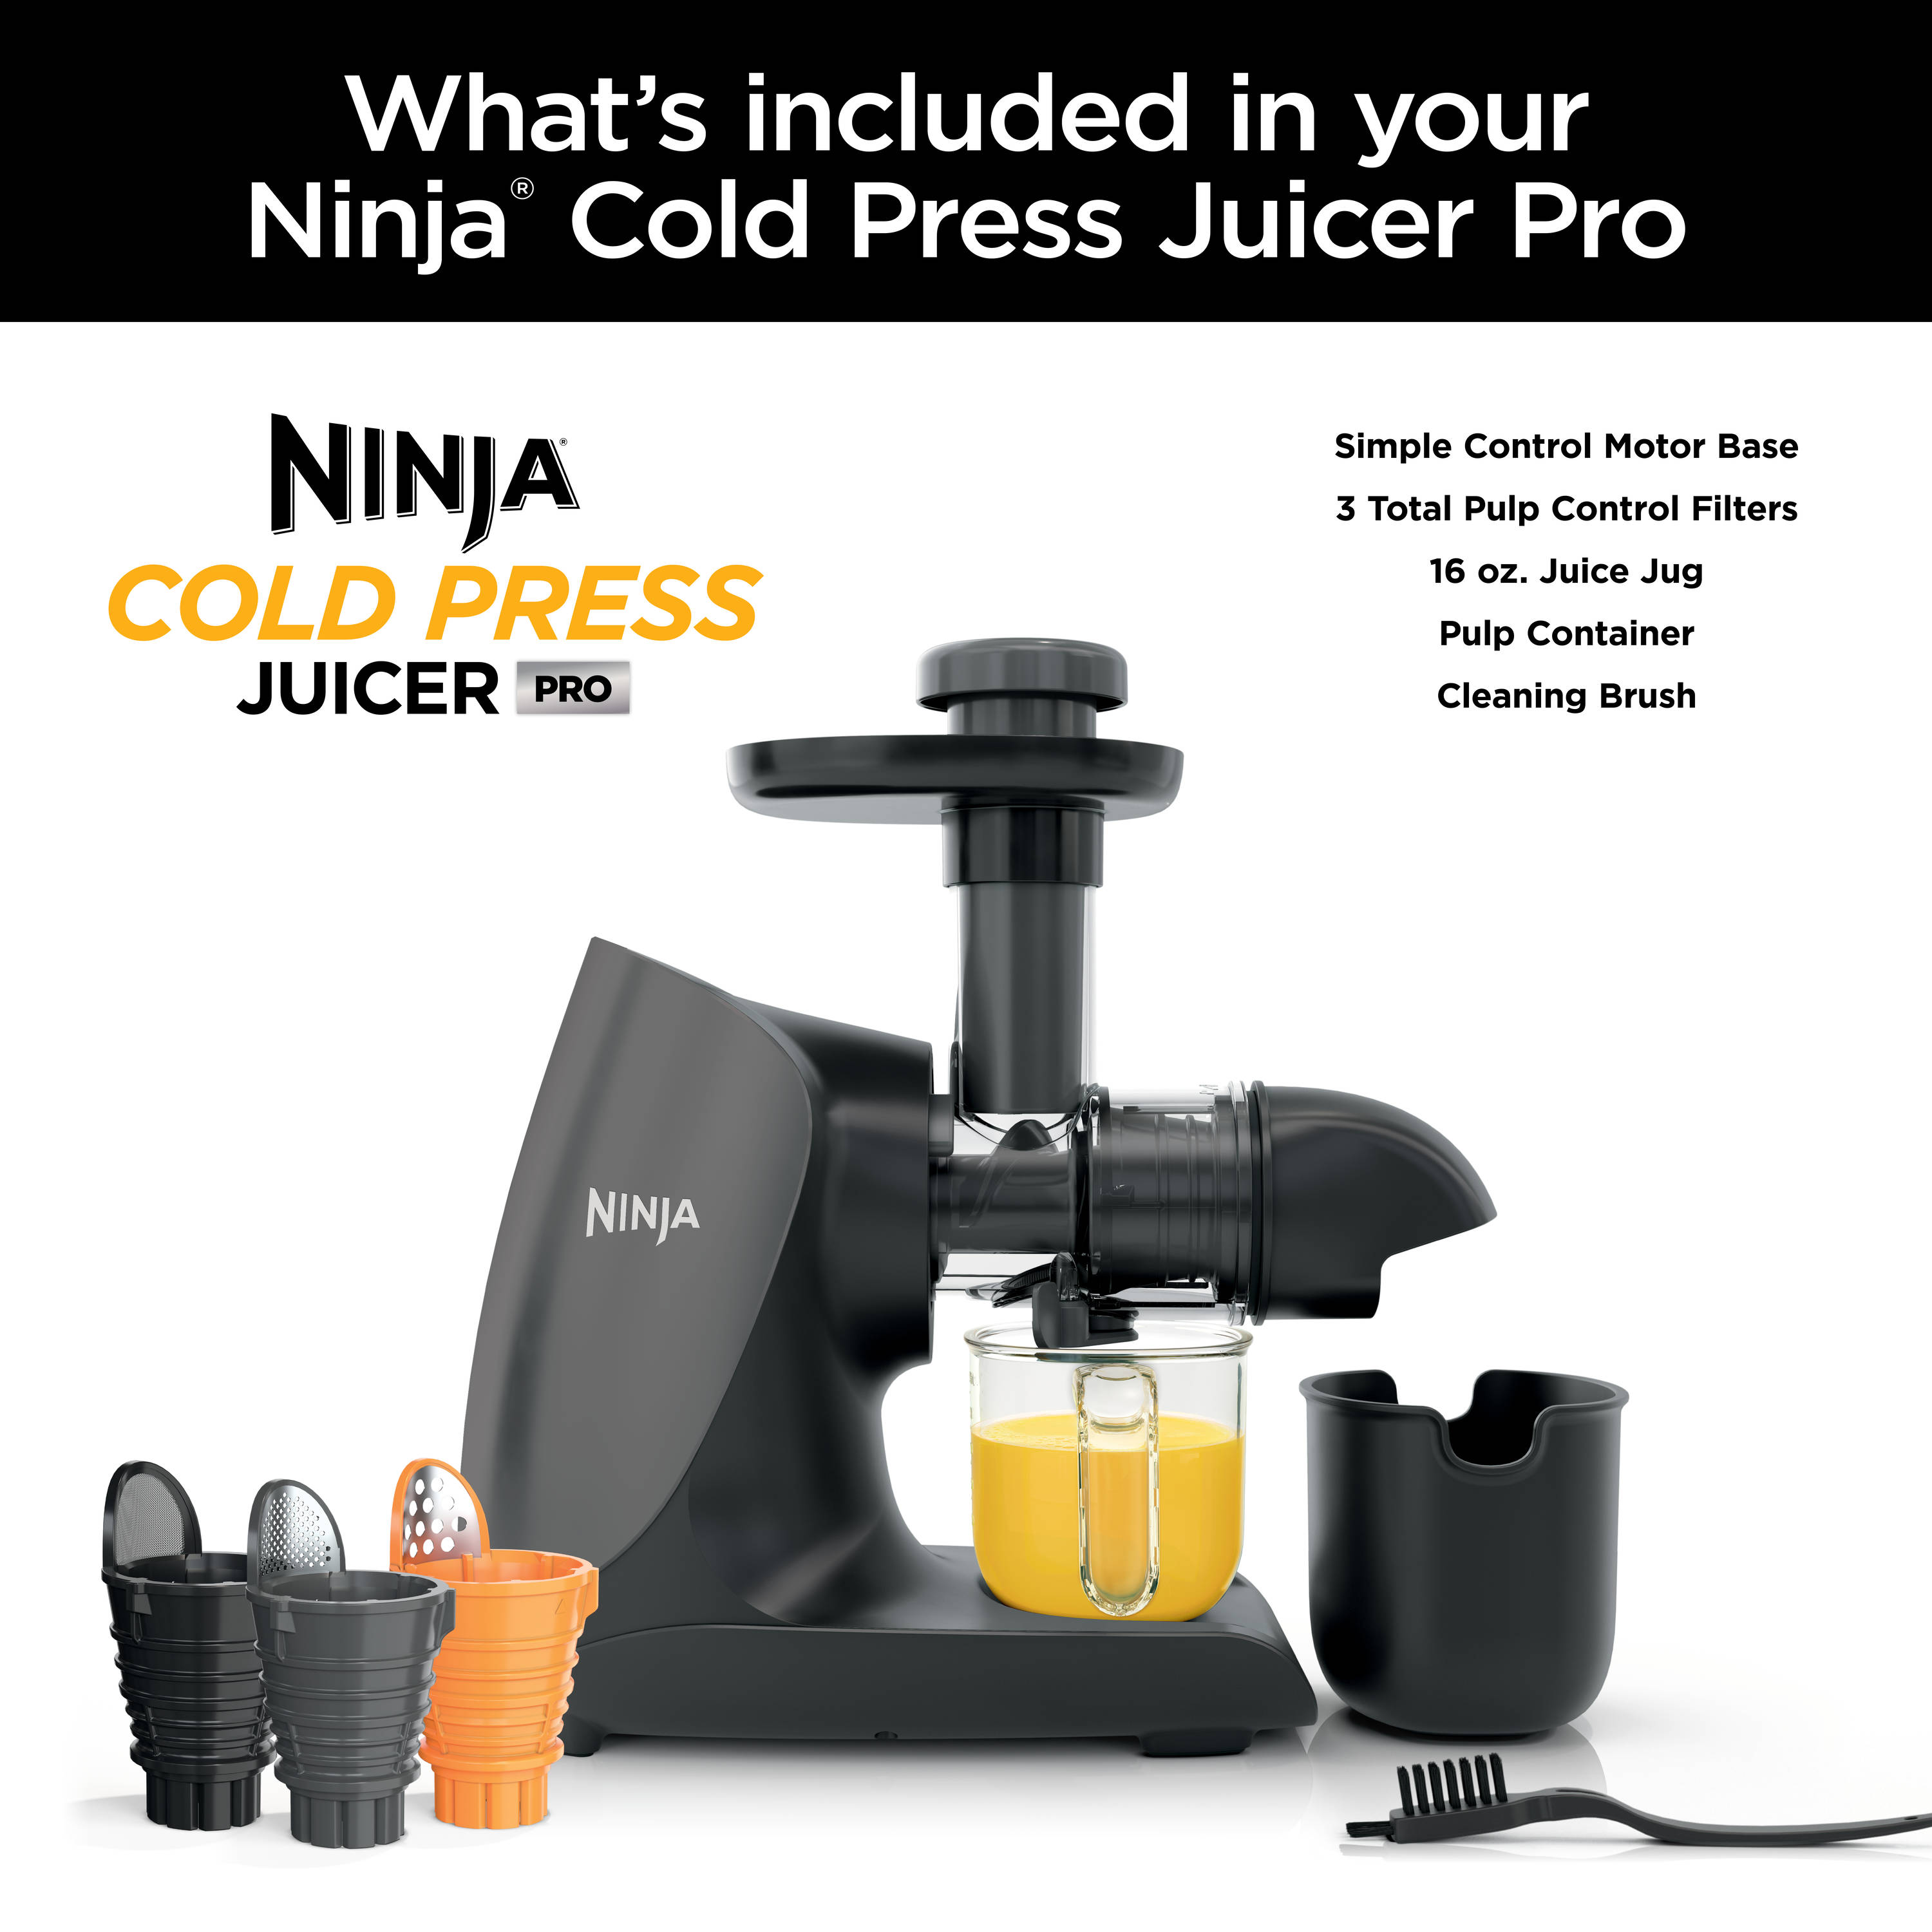 Ninja cold-press juicer Juicer review - Reviews